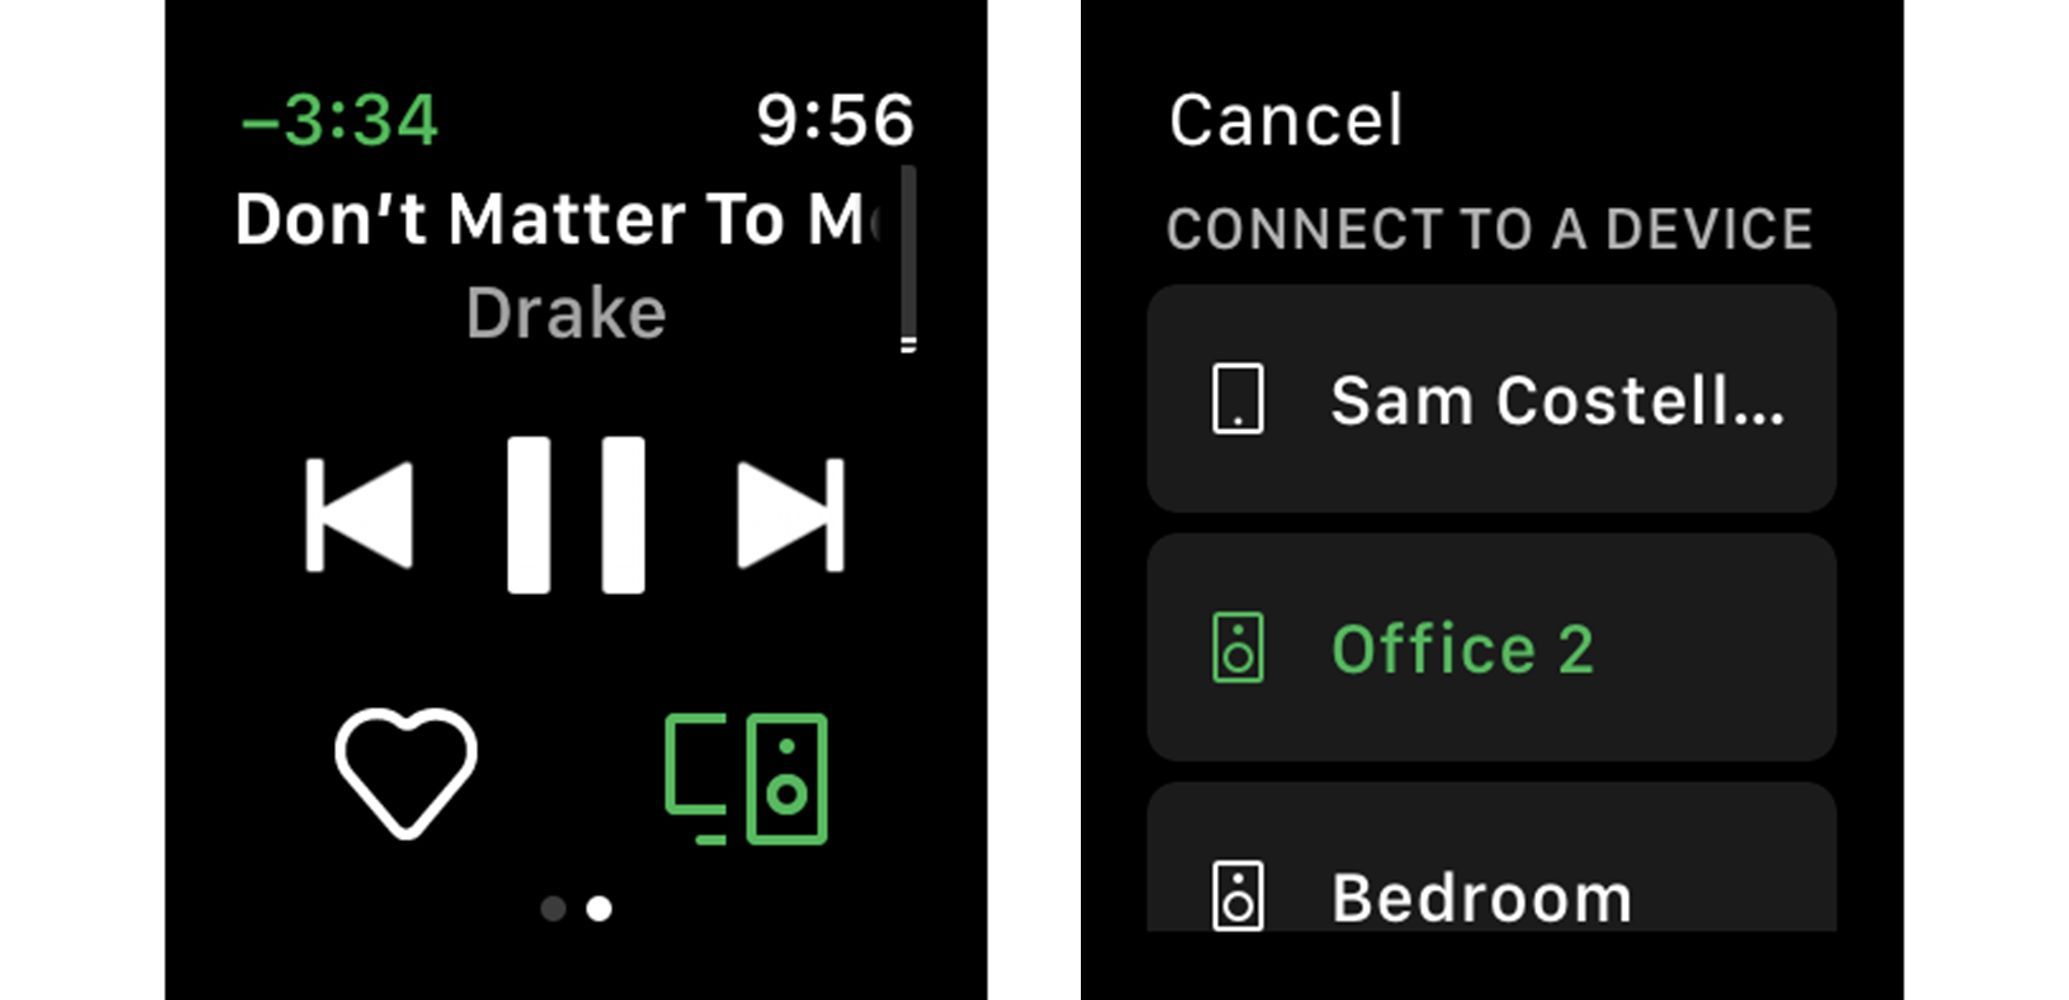 Скриншоты из Spotify Apple Watch, показывающие, как выбрать, какой динамик должен воспроизводить звук.